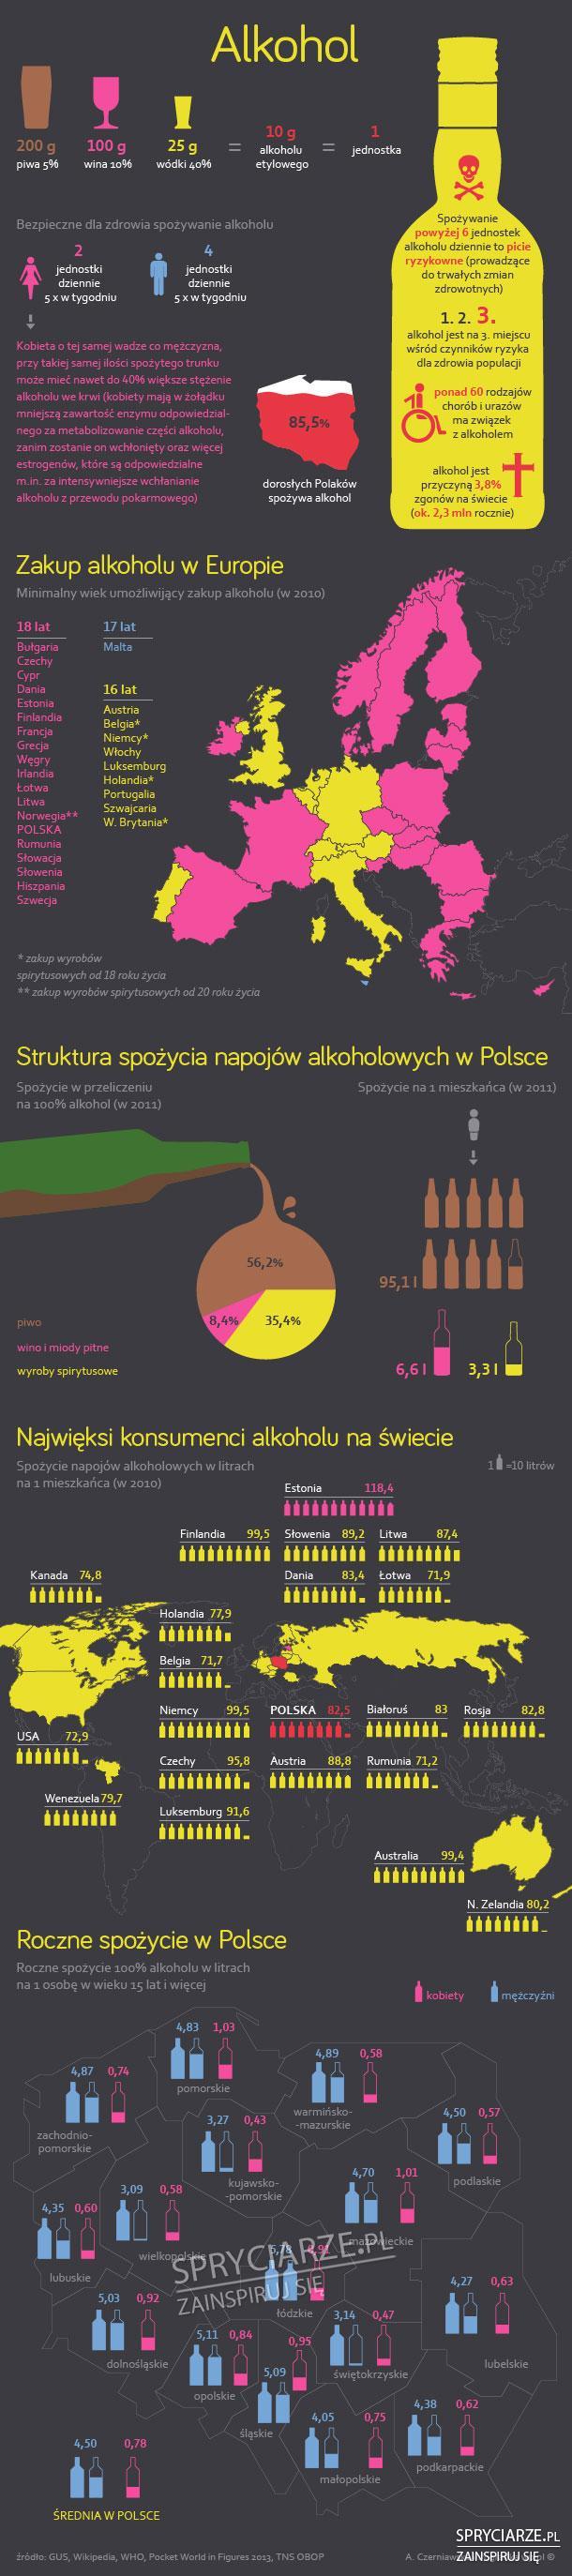 Alkohol w Polsce